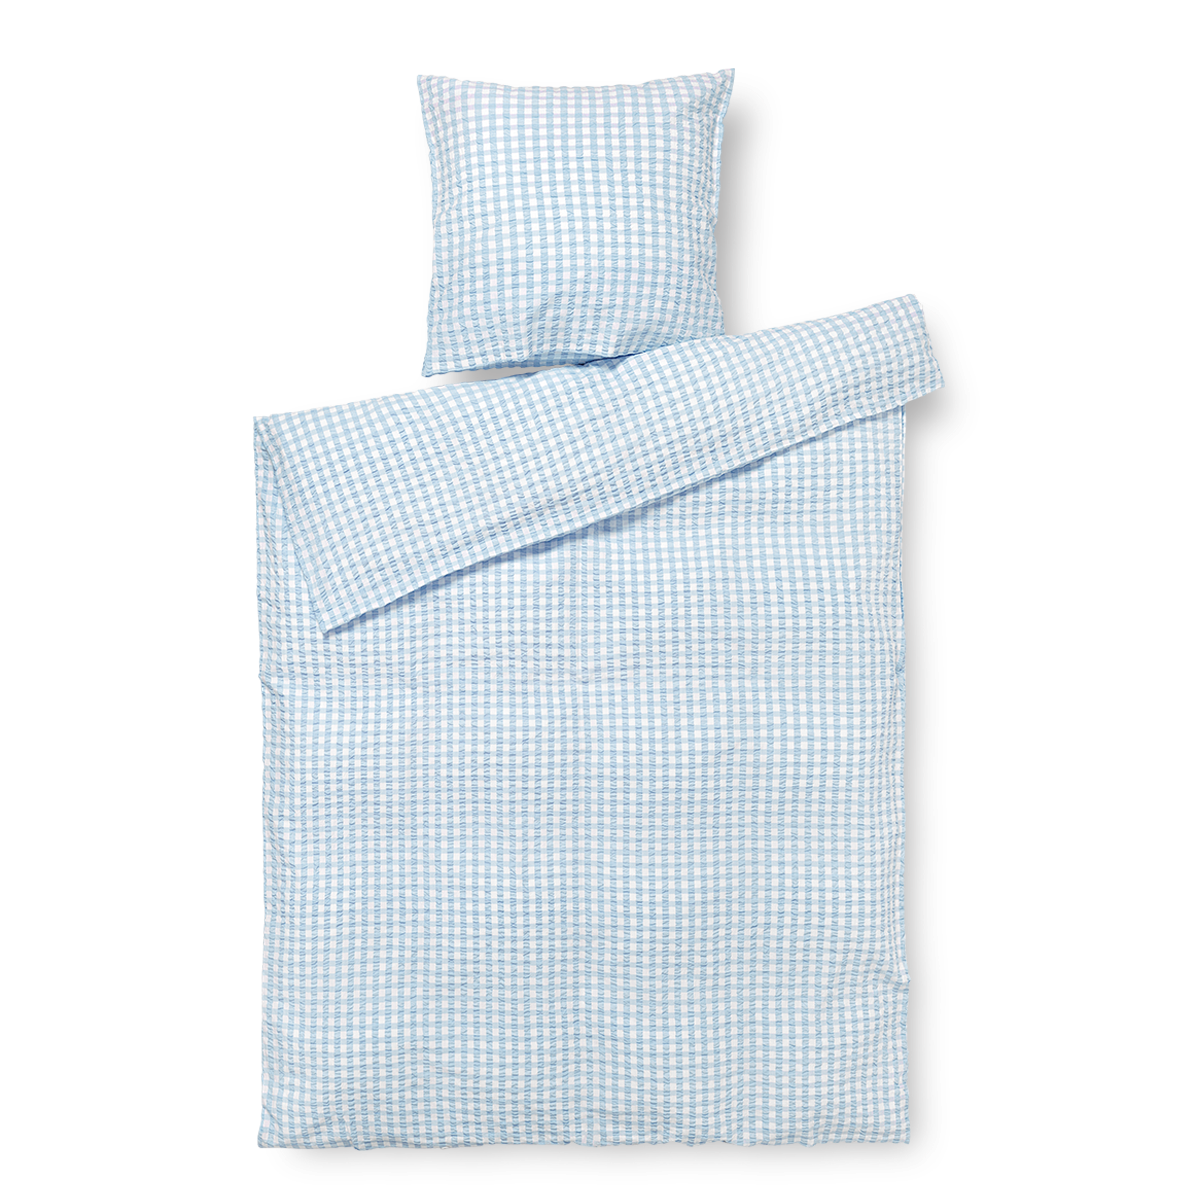 Juna - Organic Bed linen - Crisp  - 140 x 220 cm - Light blue